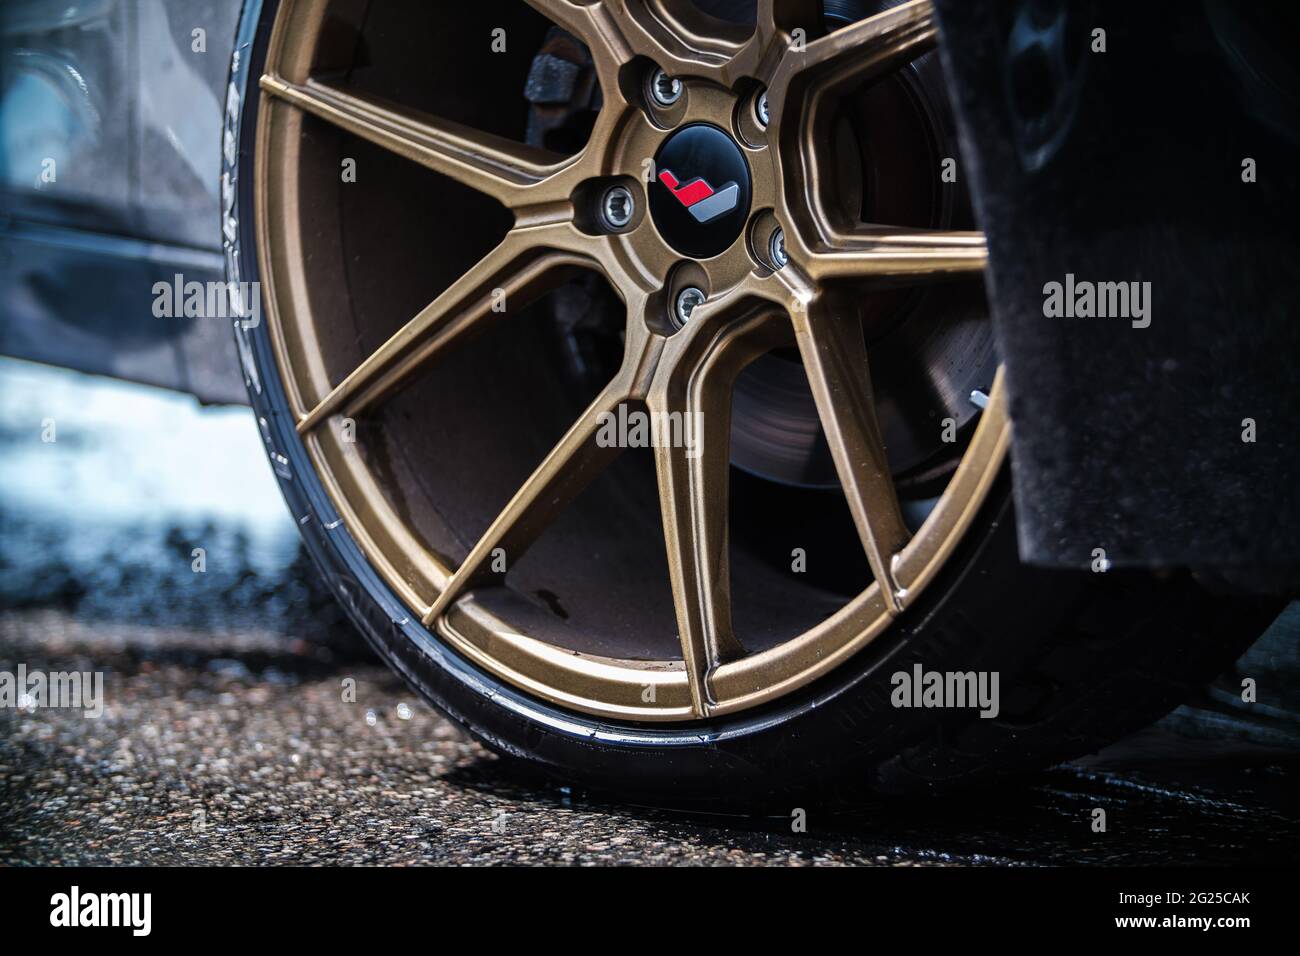 KIEW-15 MAY,2021: Custom BMW M3 mit geschmiedeten Felgen und Low-Profile  Pirelli P Zero Reifen zum Driften wie auf Drift und Car Show gesehen.  Leistungsoptimiert Ge Stockfotografie - Alamy